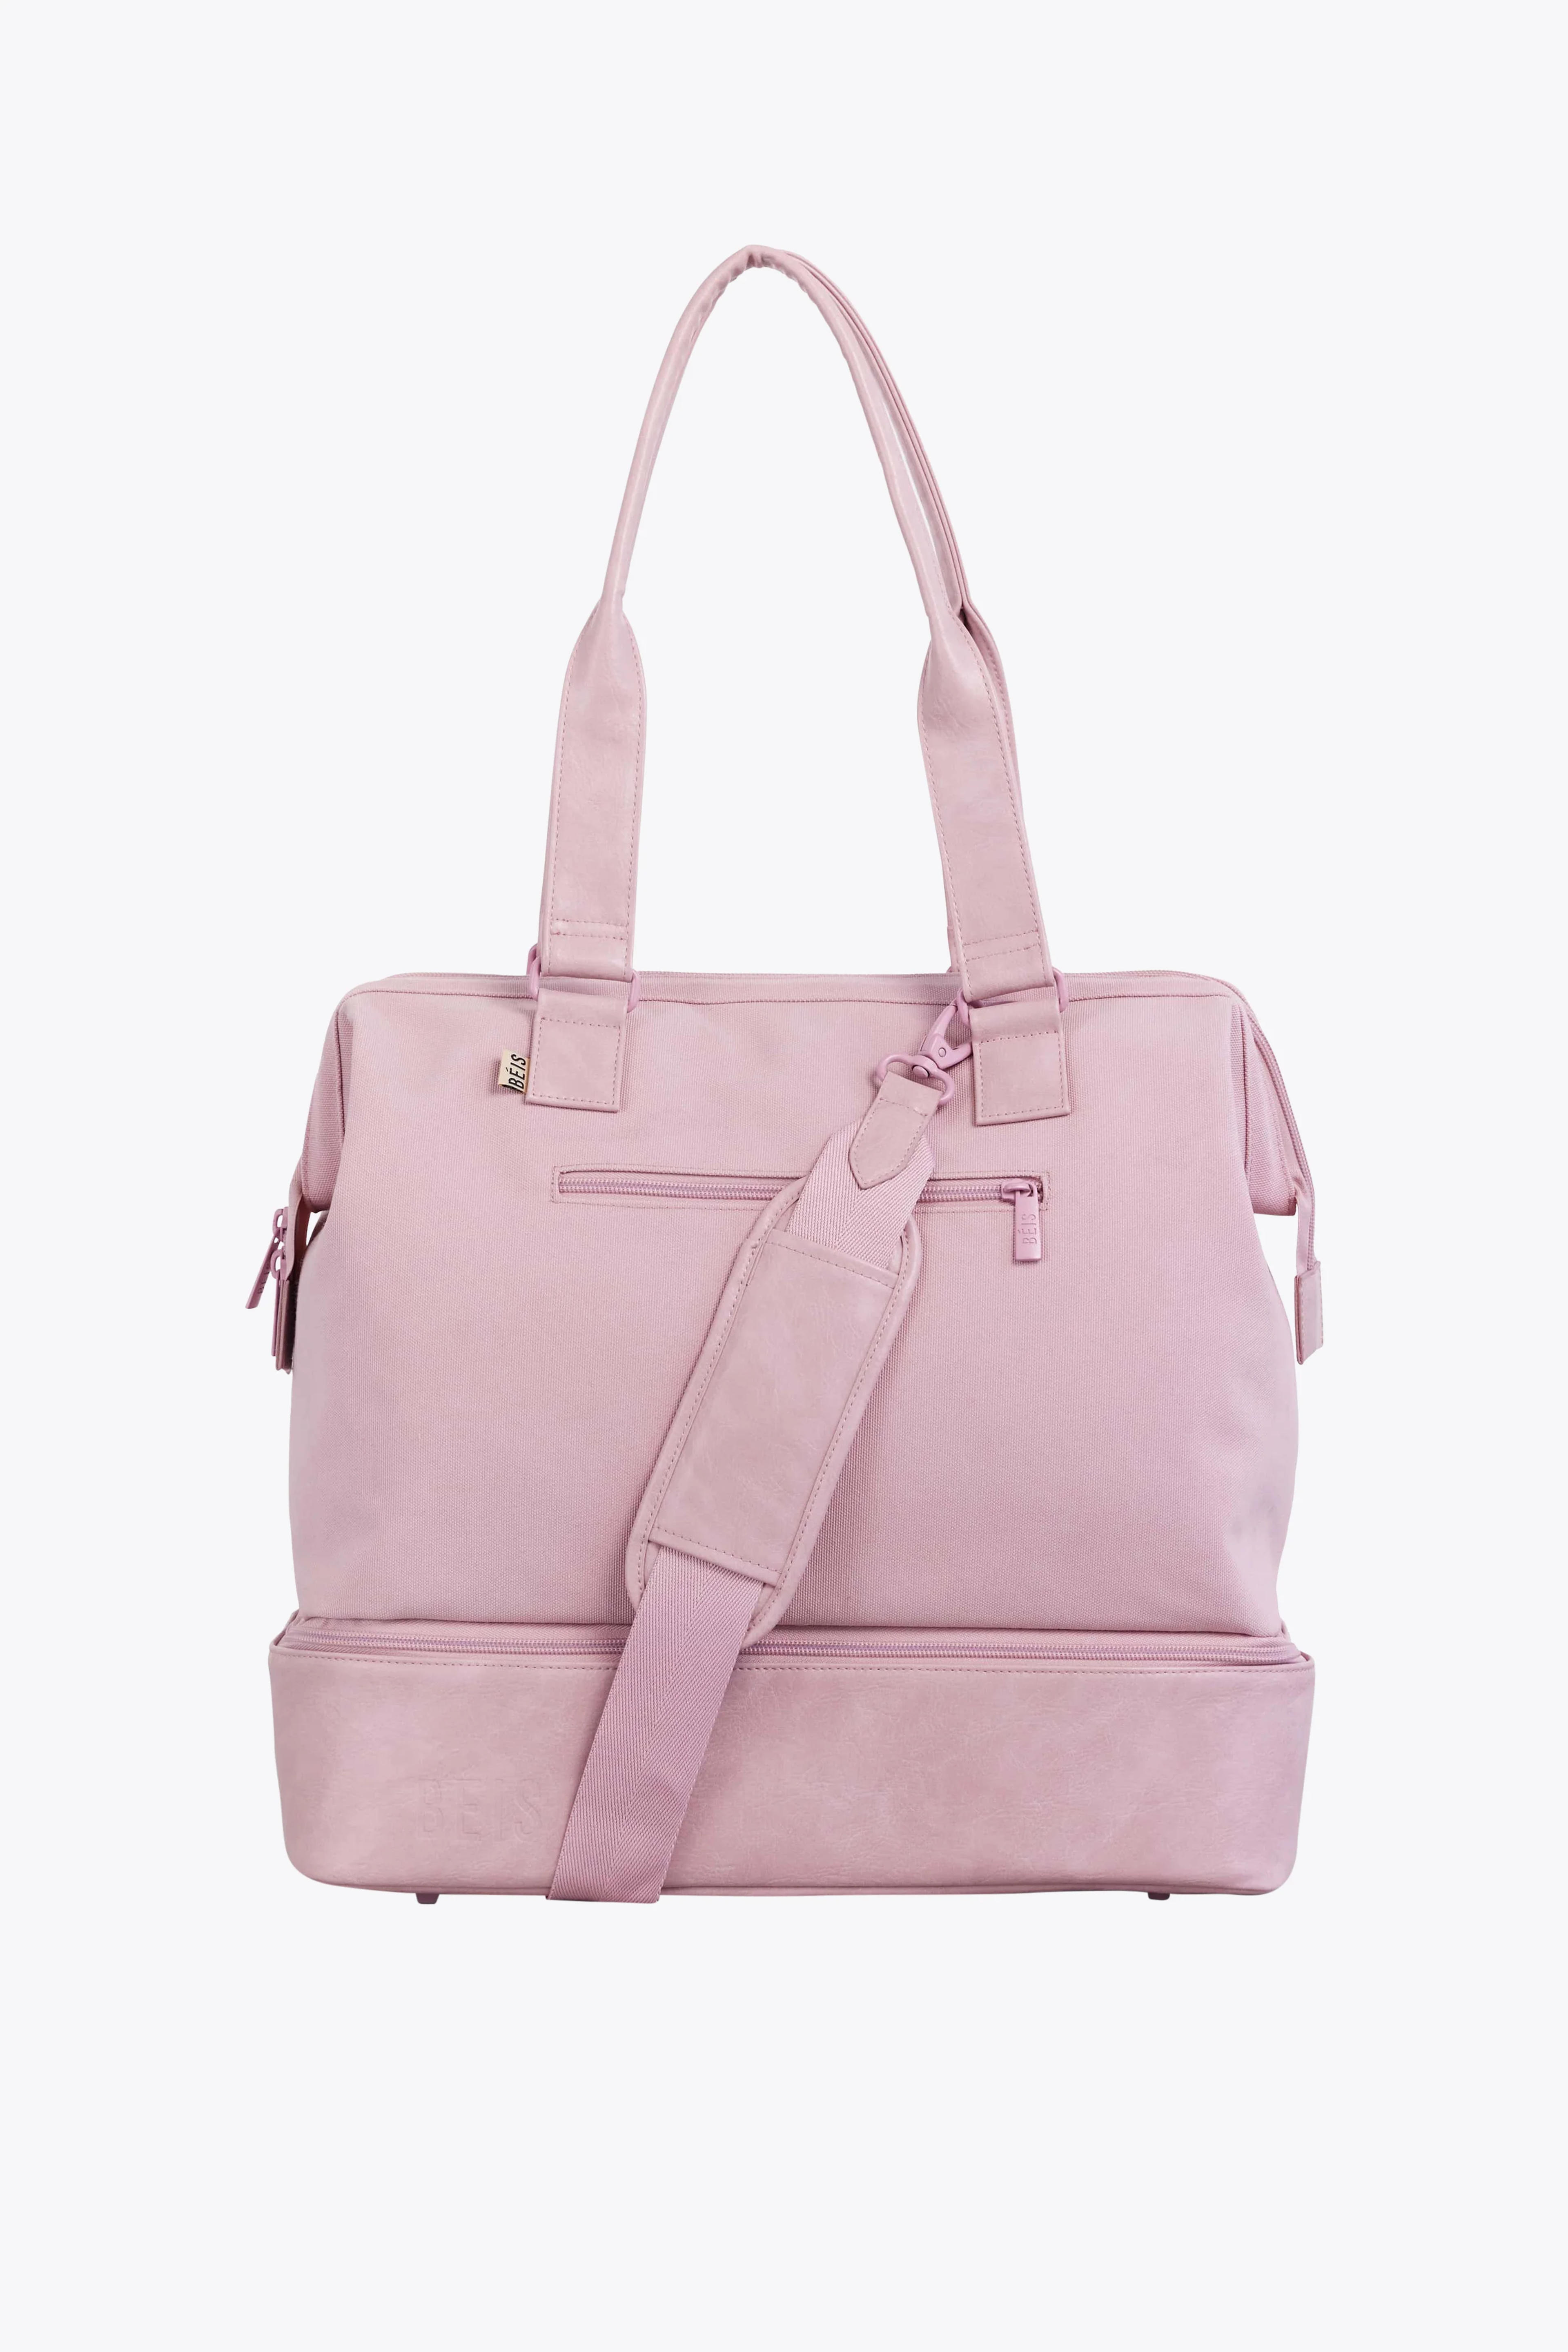 Béis 'The Mini Weekender' in Atlas Pink - Mini Weekender & Small Overnight Travel Bag